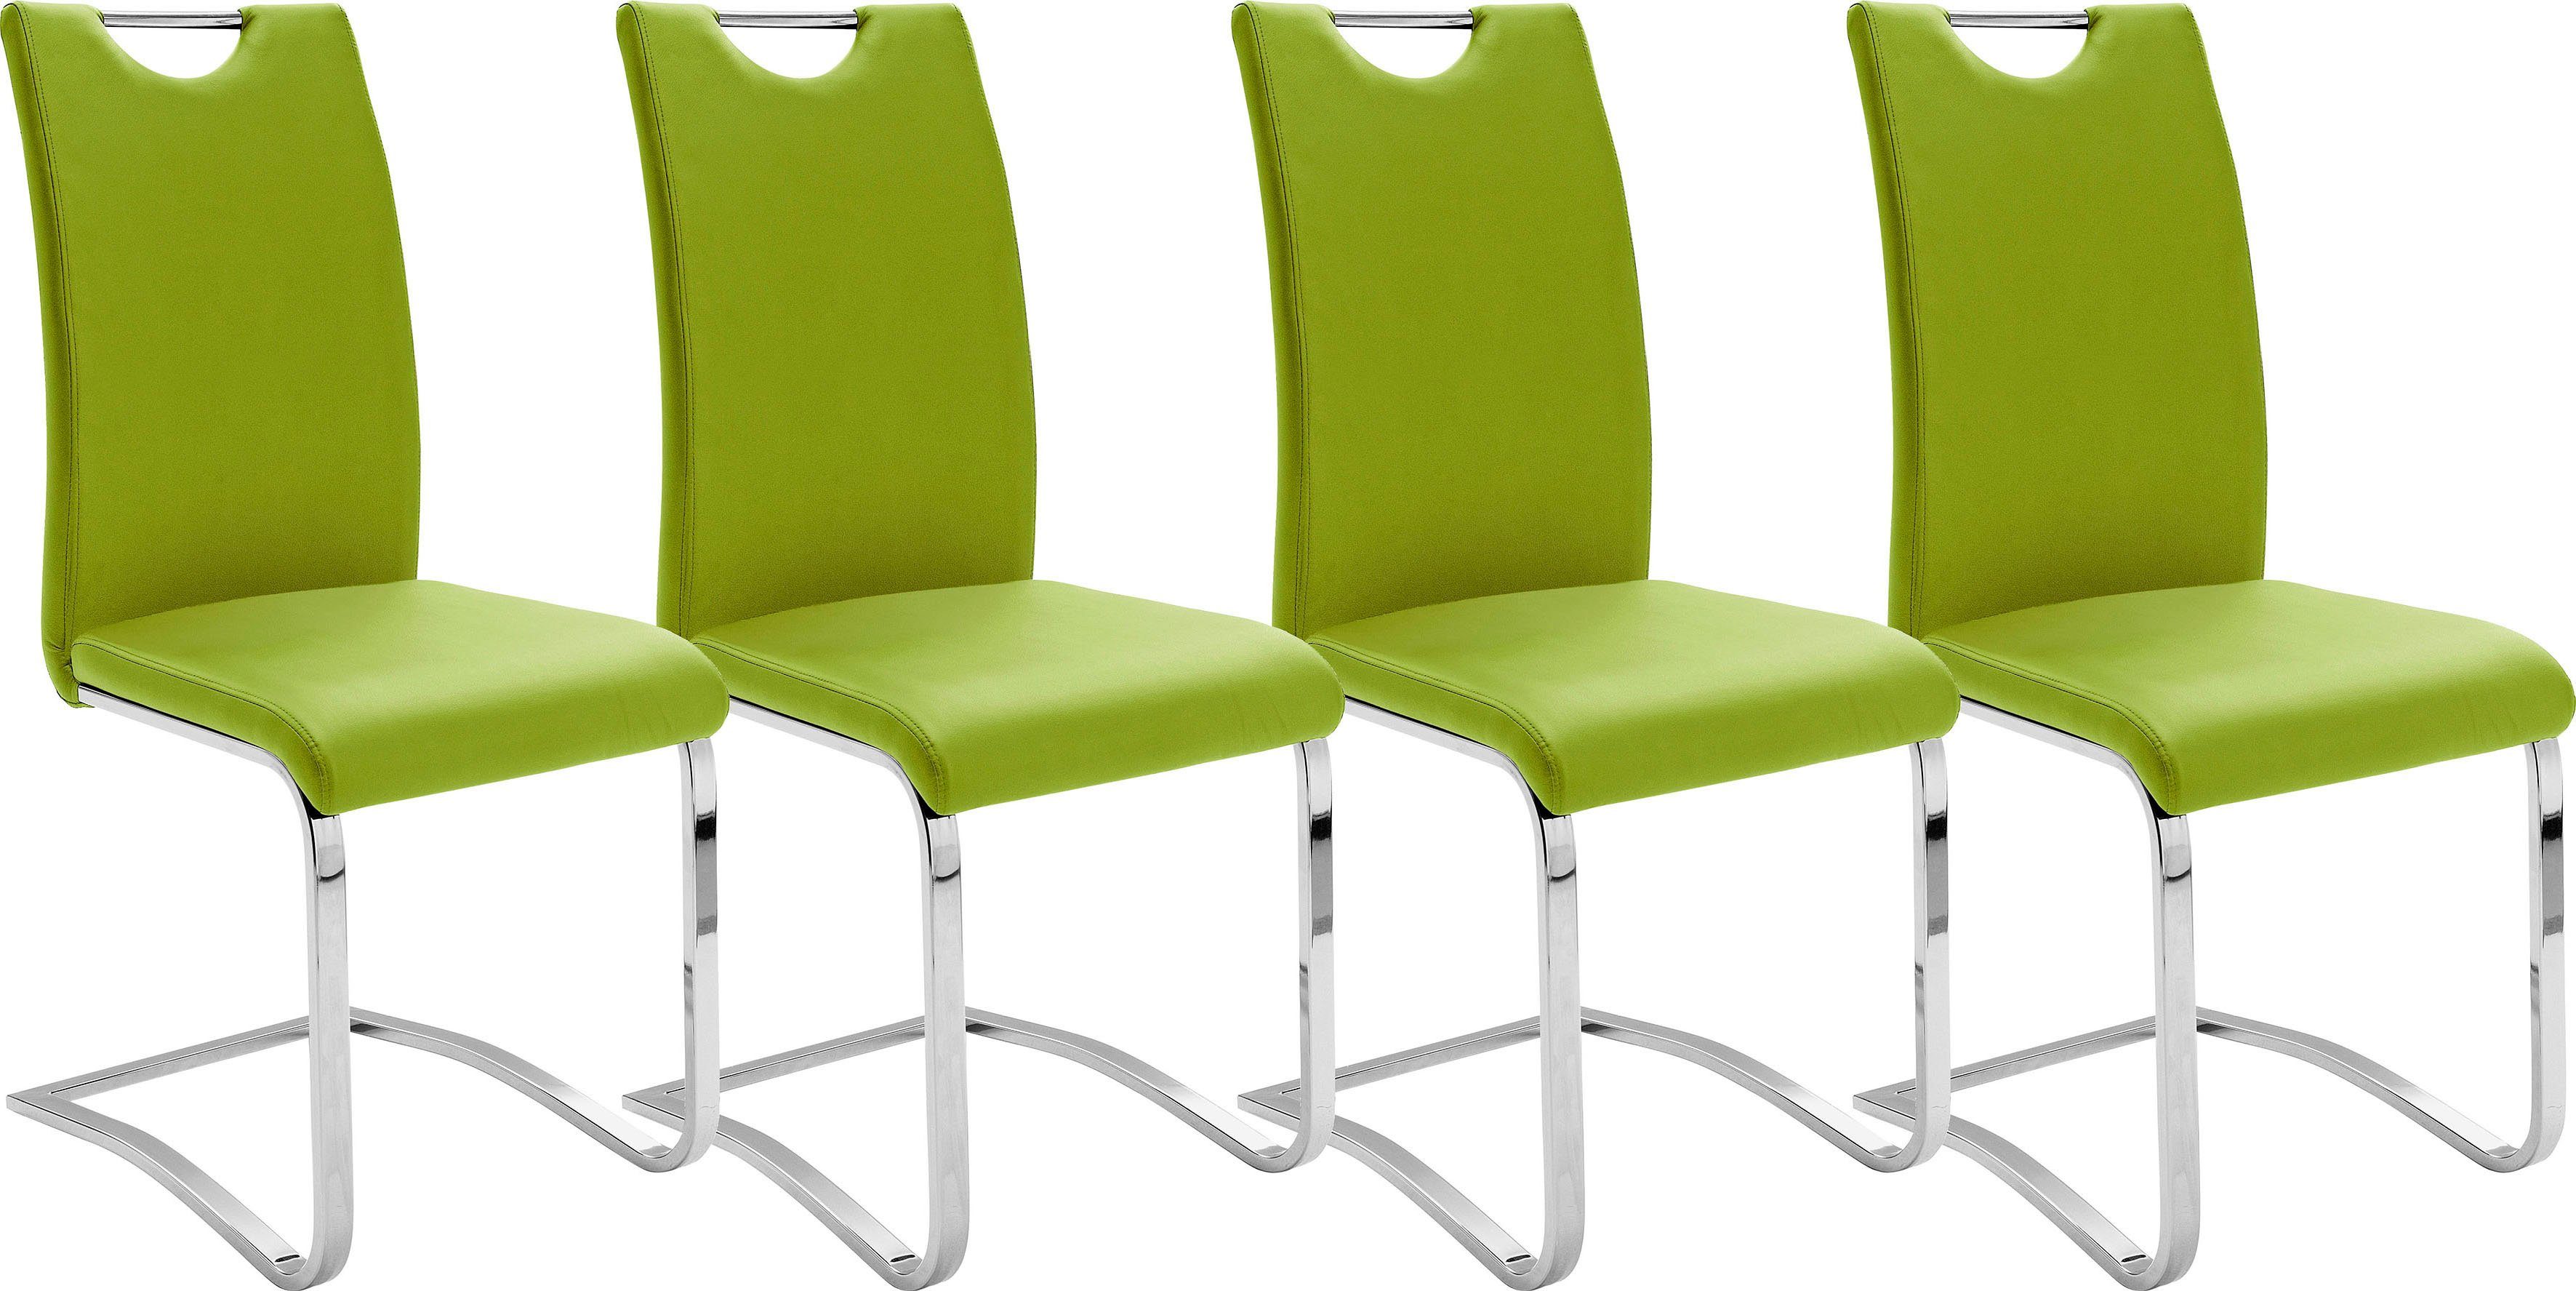 MCA furniture Vrijdragende stoel Keulen Overtrokken met kunstleer met handgreep, comfortzithoogte, stoel belastbaar tot 120 kg (set, 4 stuks)